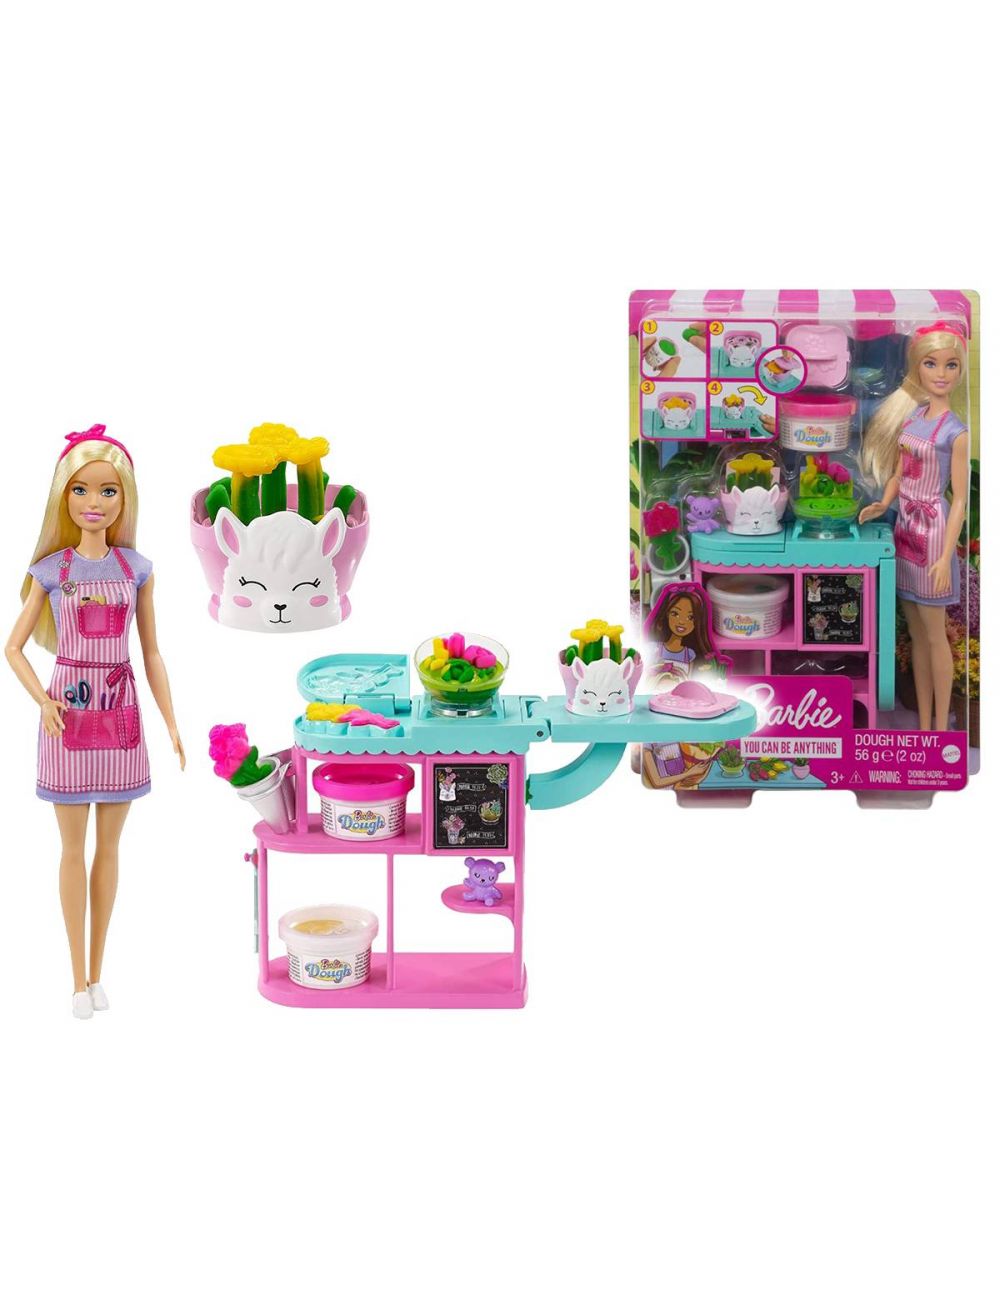 Barbie Kwiaciarka Lalka i Akcesoria Zestaw GTN58